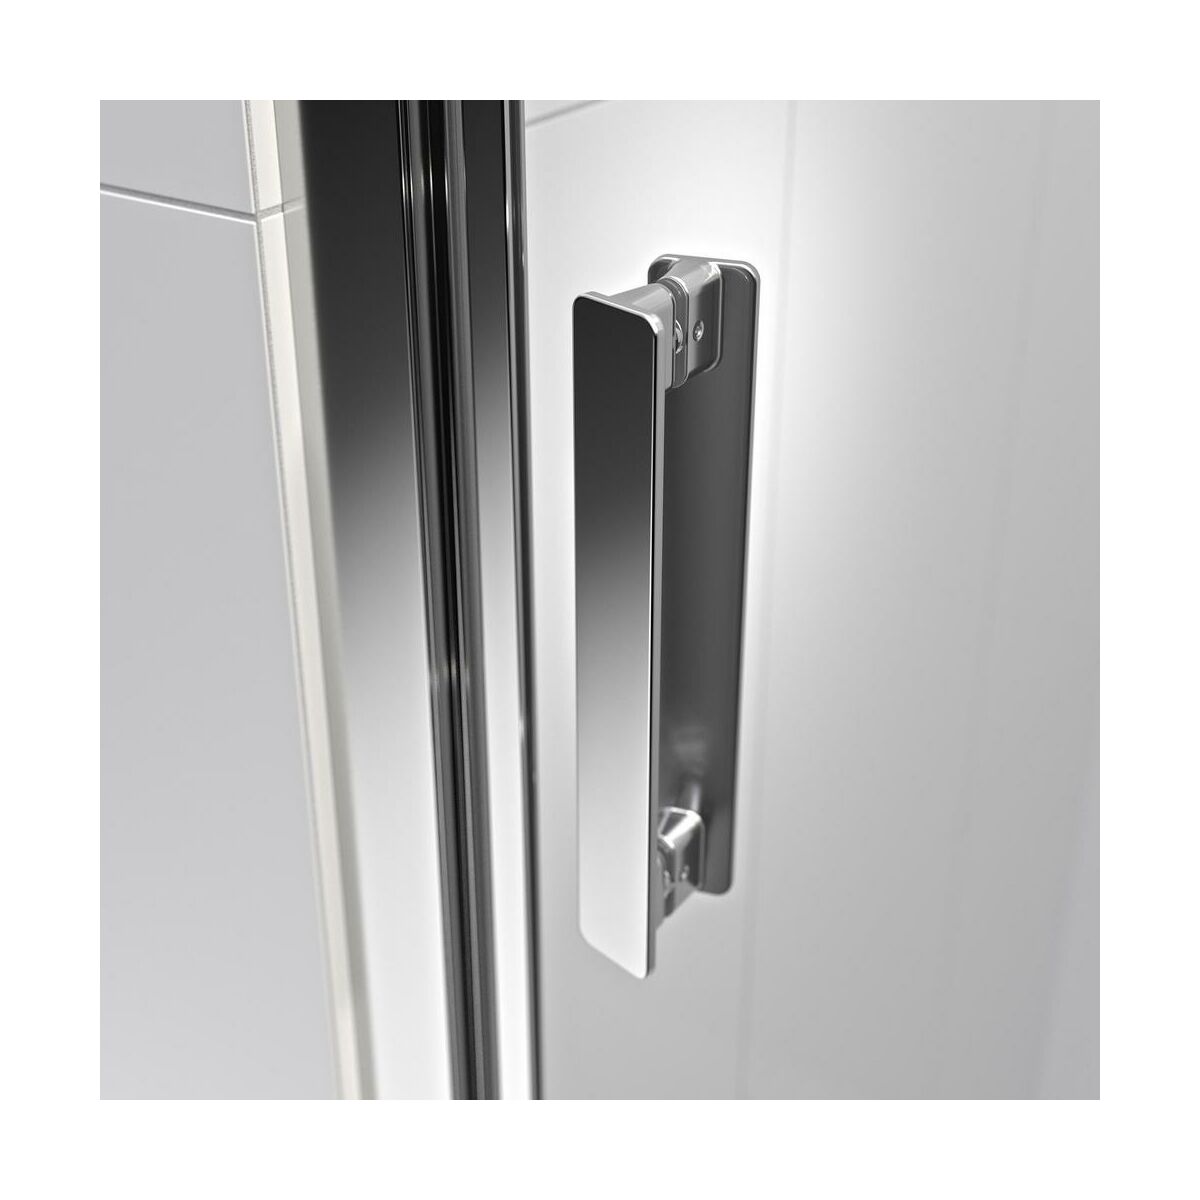 Drzwi prysznicowe przesuwne INC 140 X 200 Sealskin